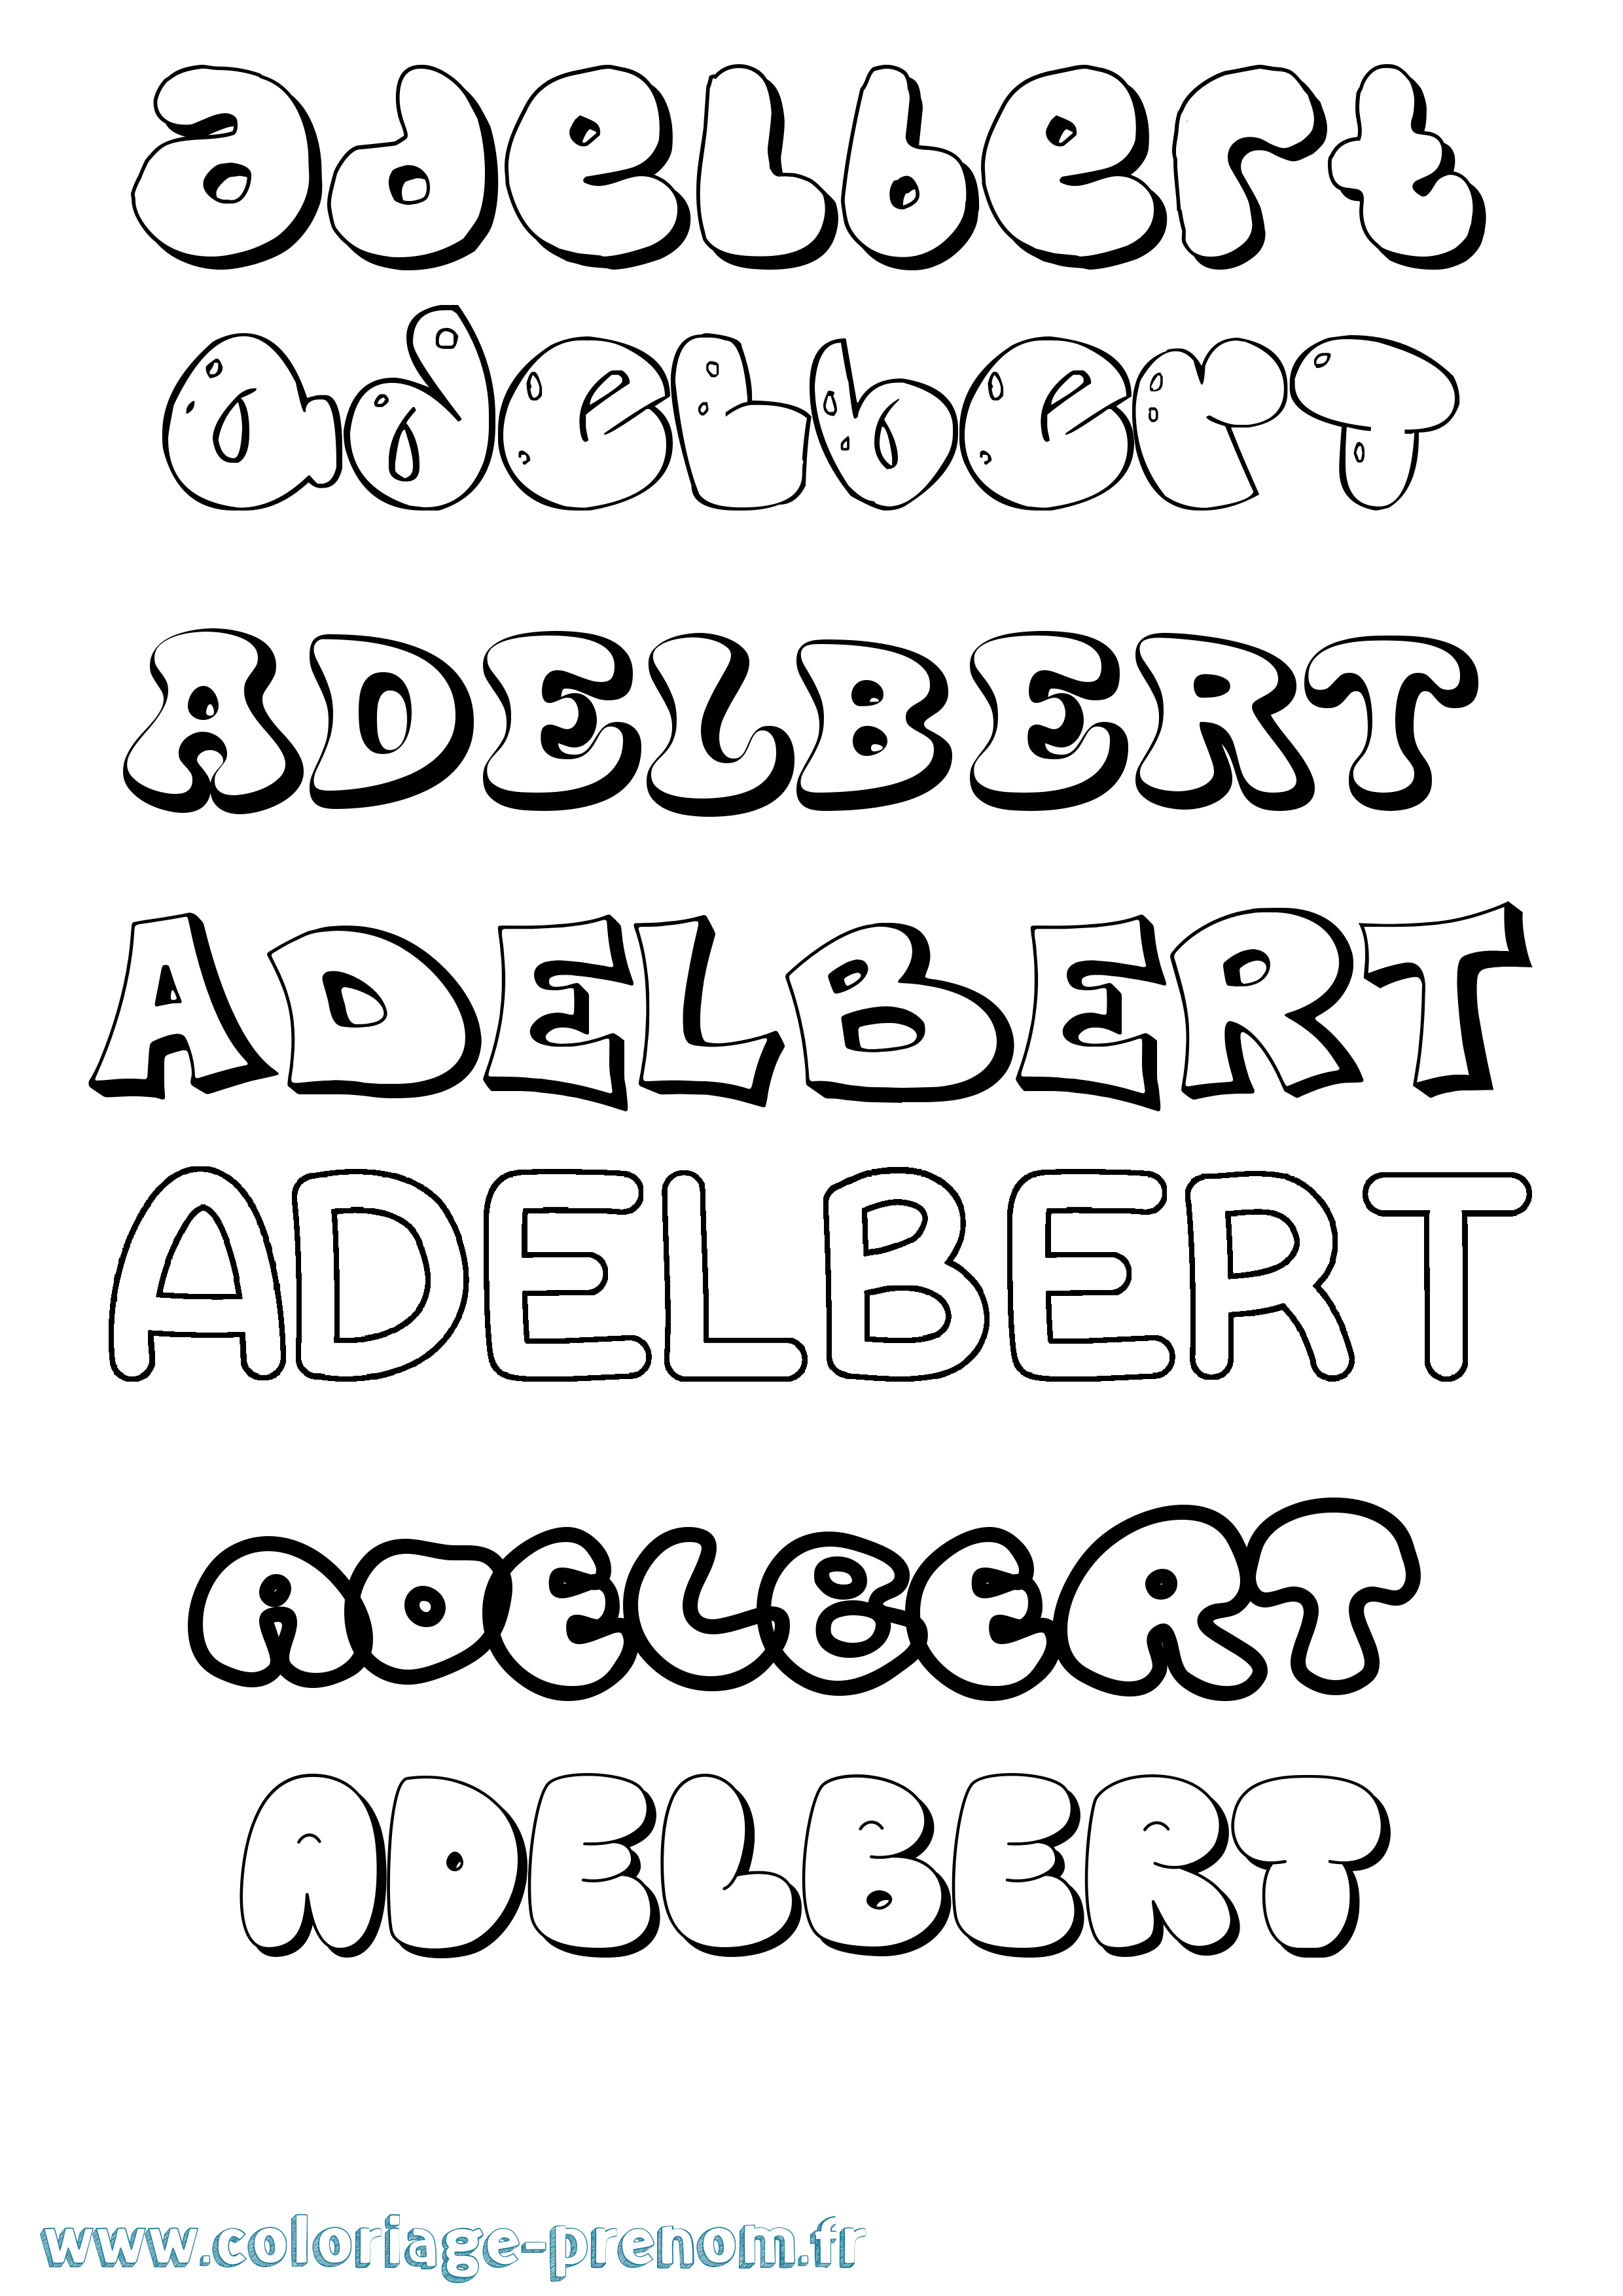 Coloriage prénom Adelbert Bubble